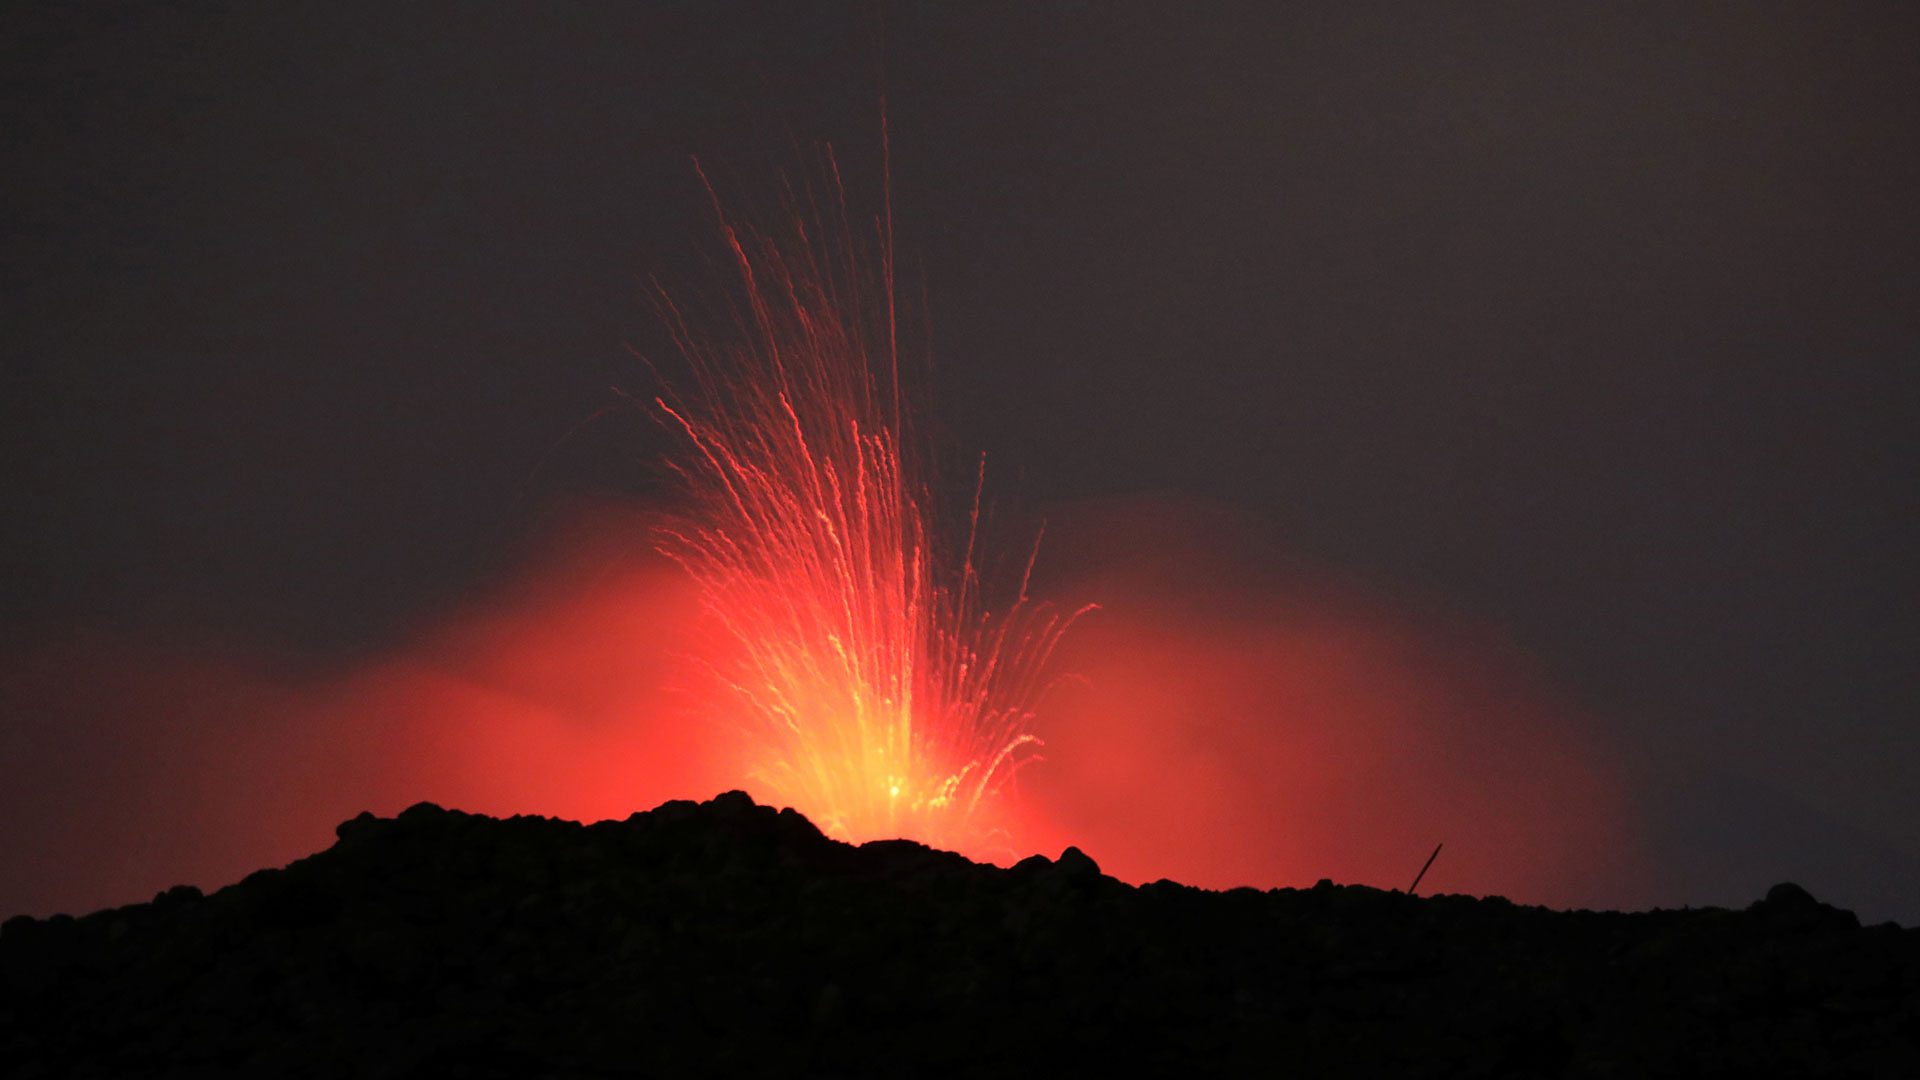 Mount Merapi: Volcano eruption spews enormous ash cloud